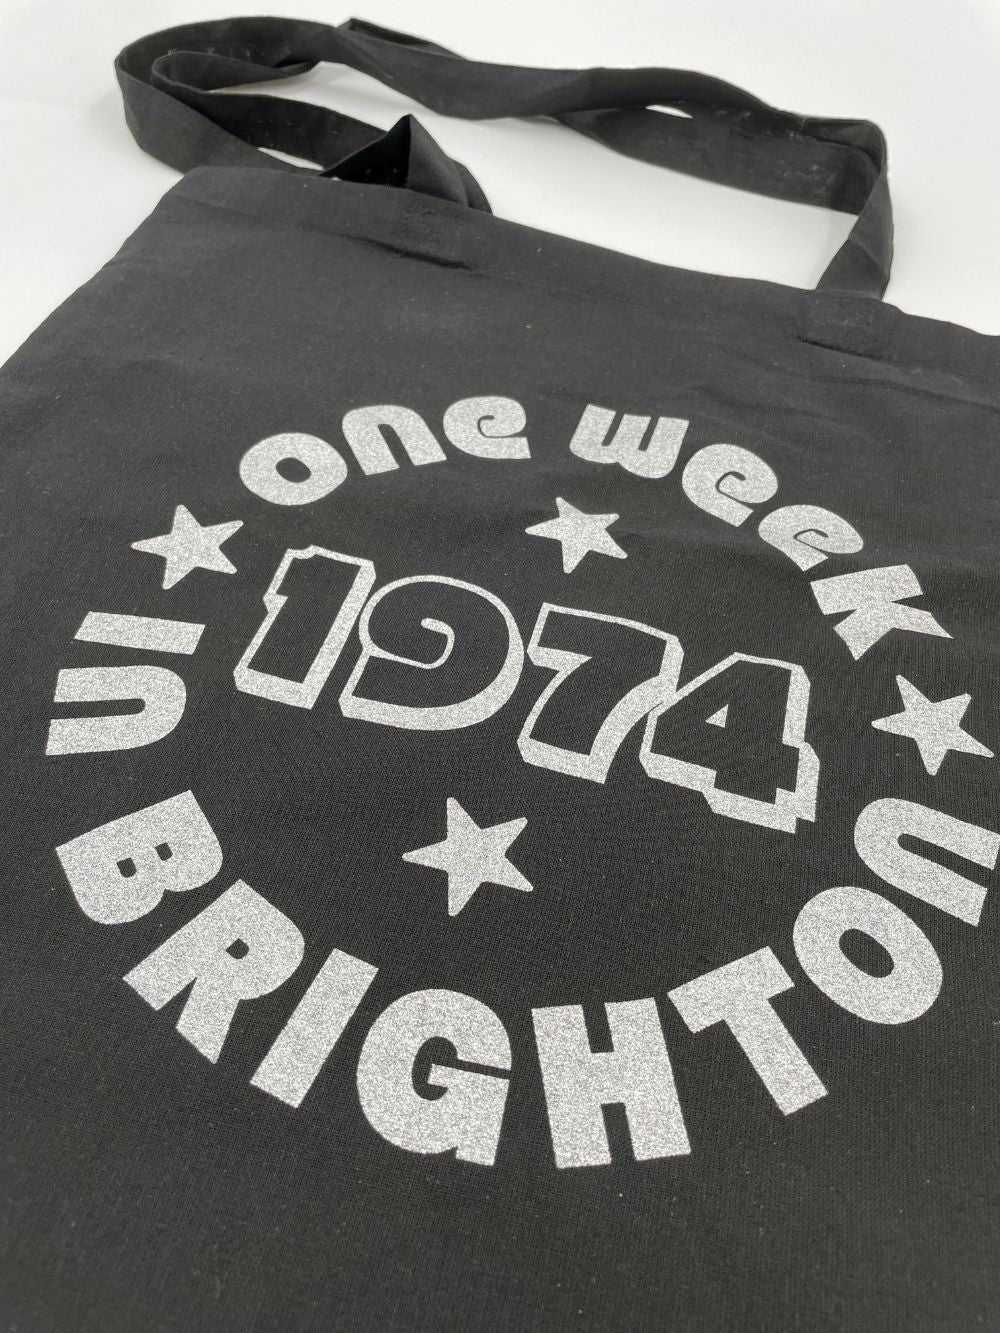 One Week in Brighton Tote Bag